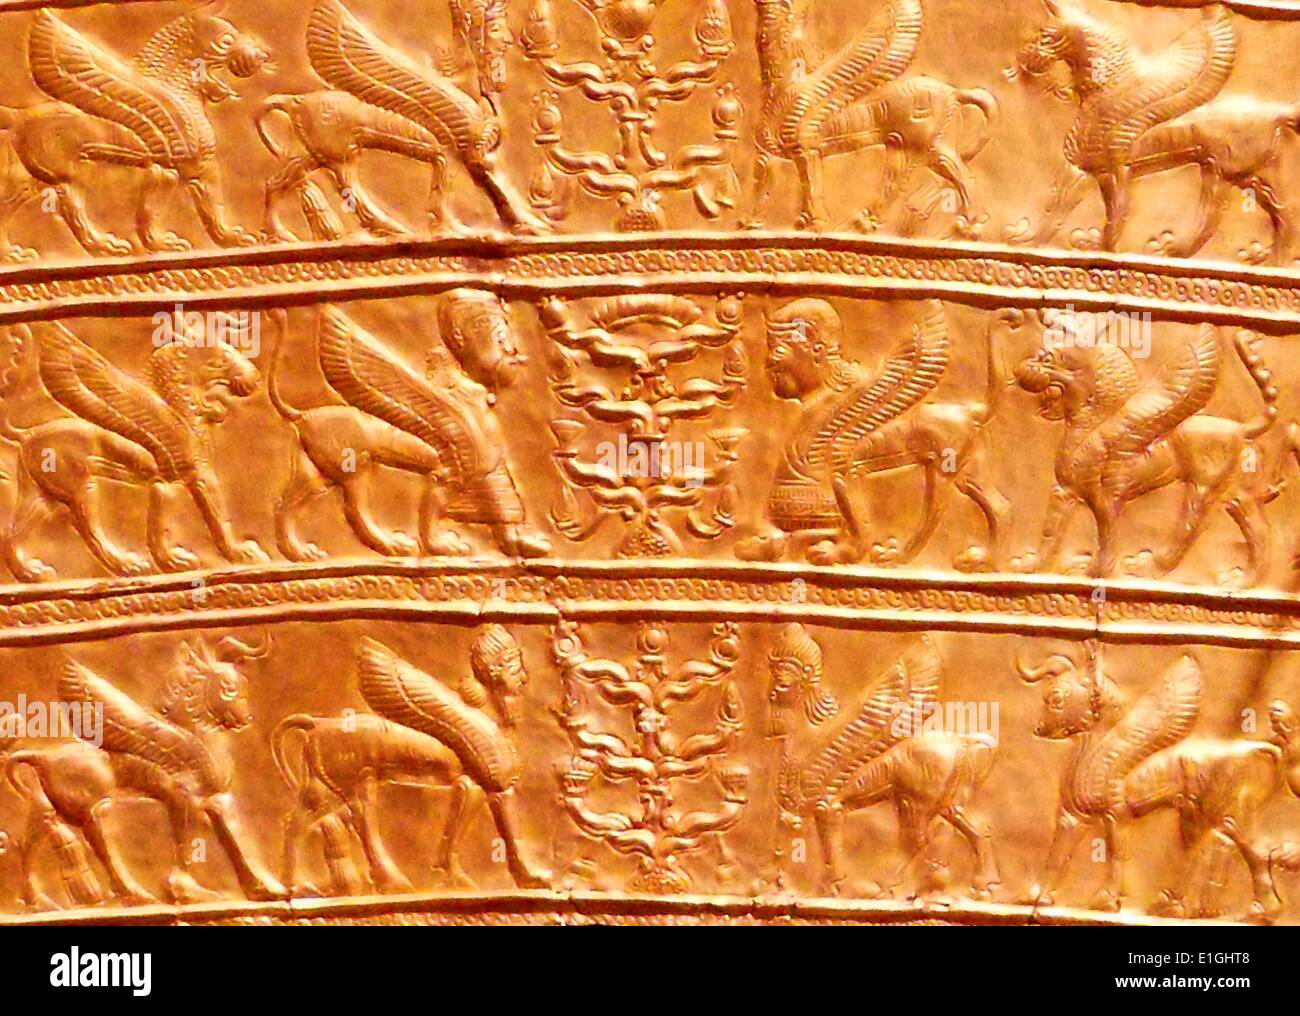 Placche con creature alate avvicinando gli alberi stilizzati. Oro, dall'Iran nord-occidentale, 8-VII secolo A.C. Foto Stock